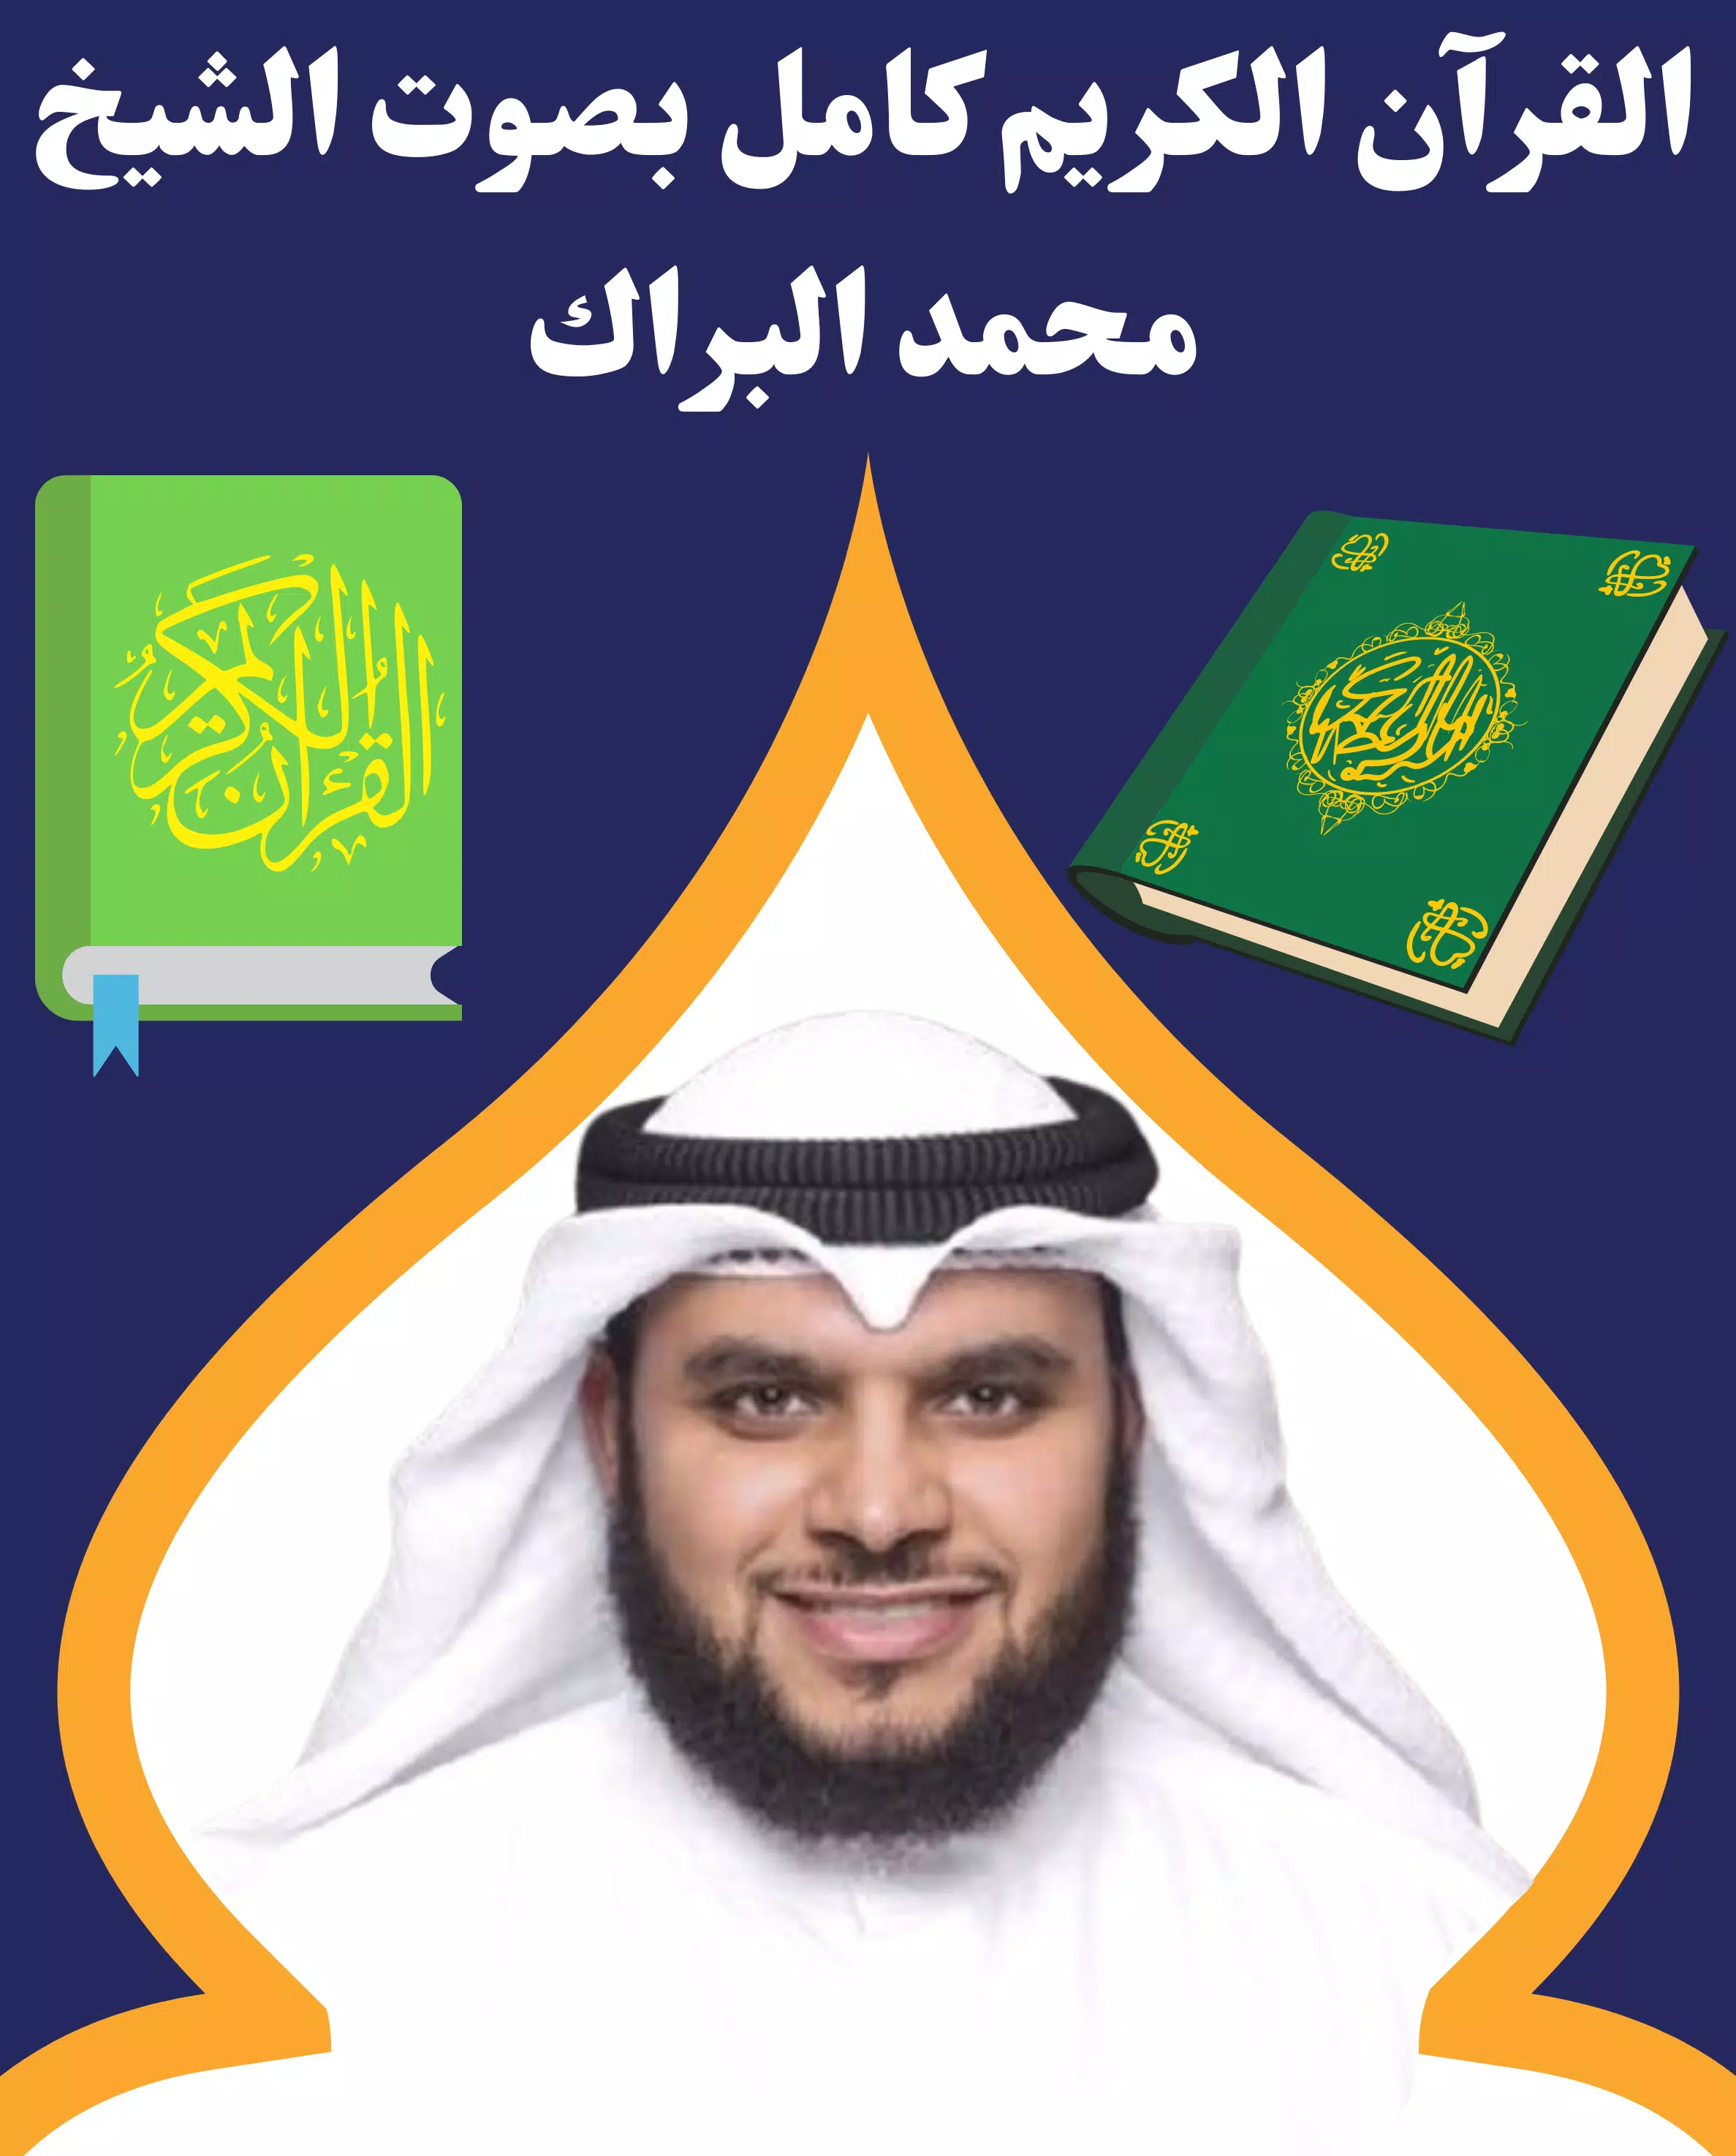 القرآن كامل بصوت محمد البراك - تلاوة المصحف الكريم APK untuk Unduhan Android